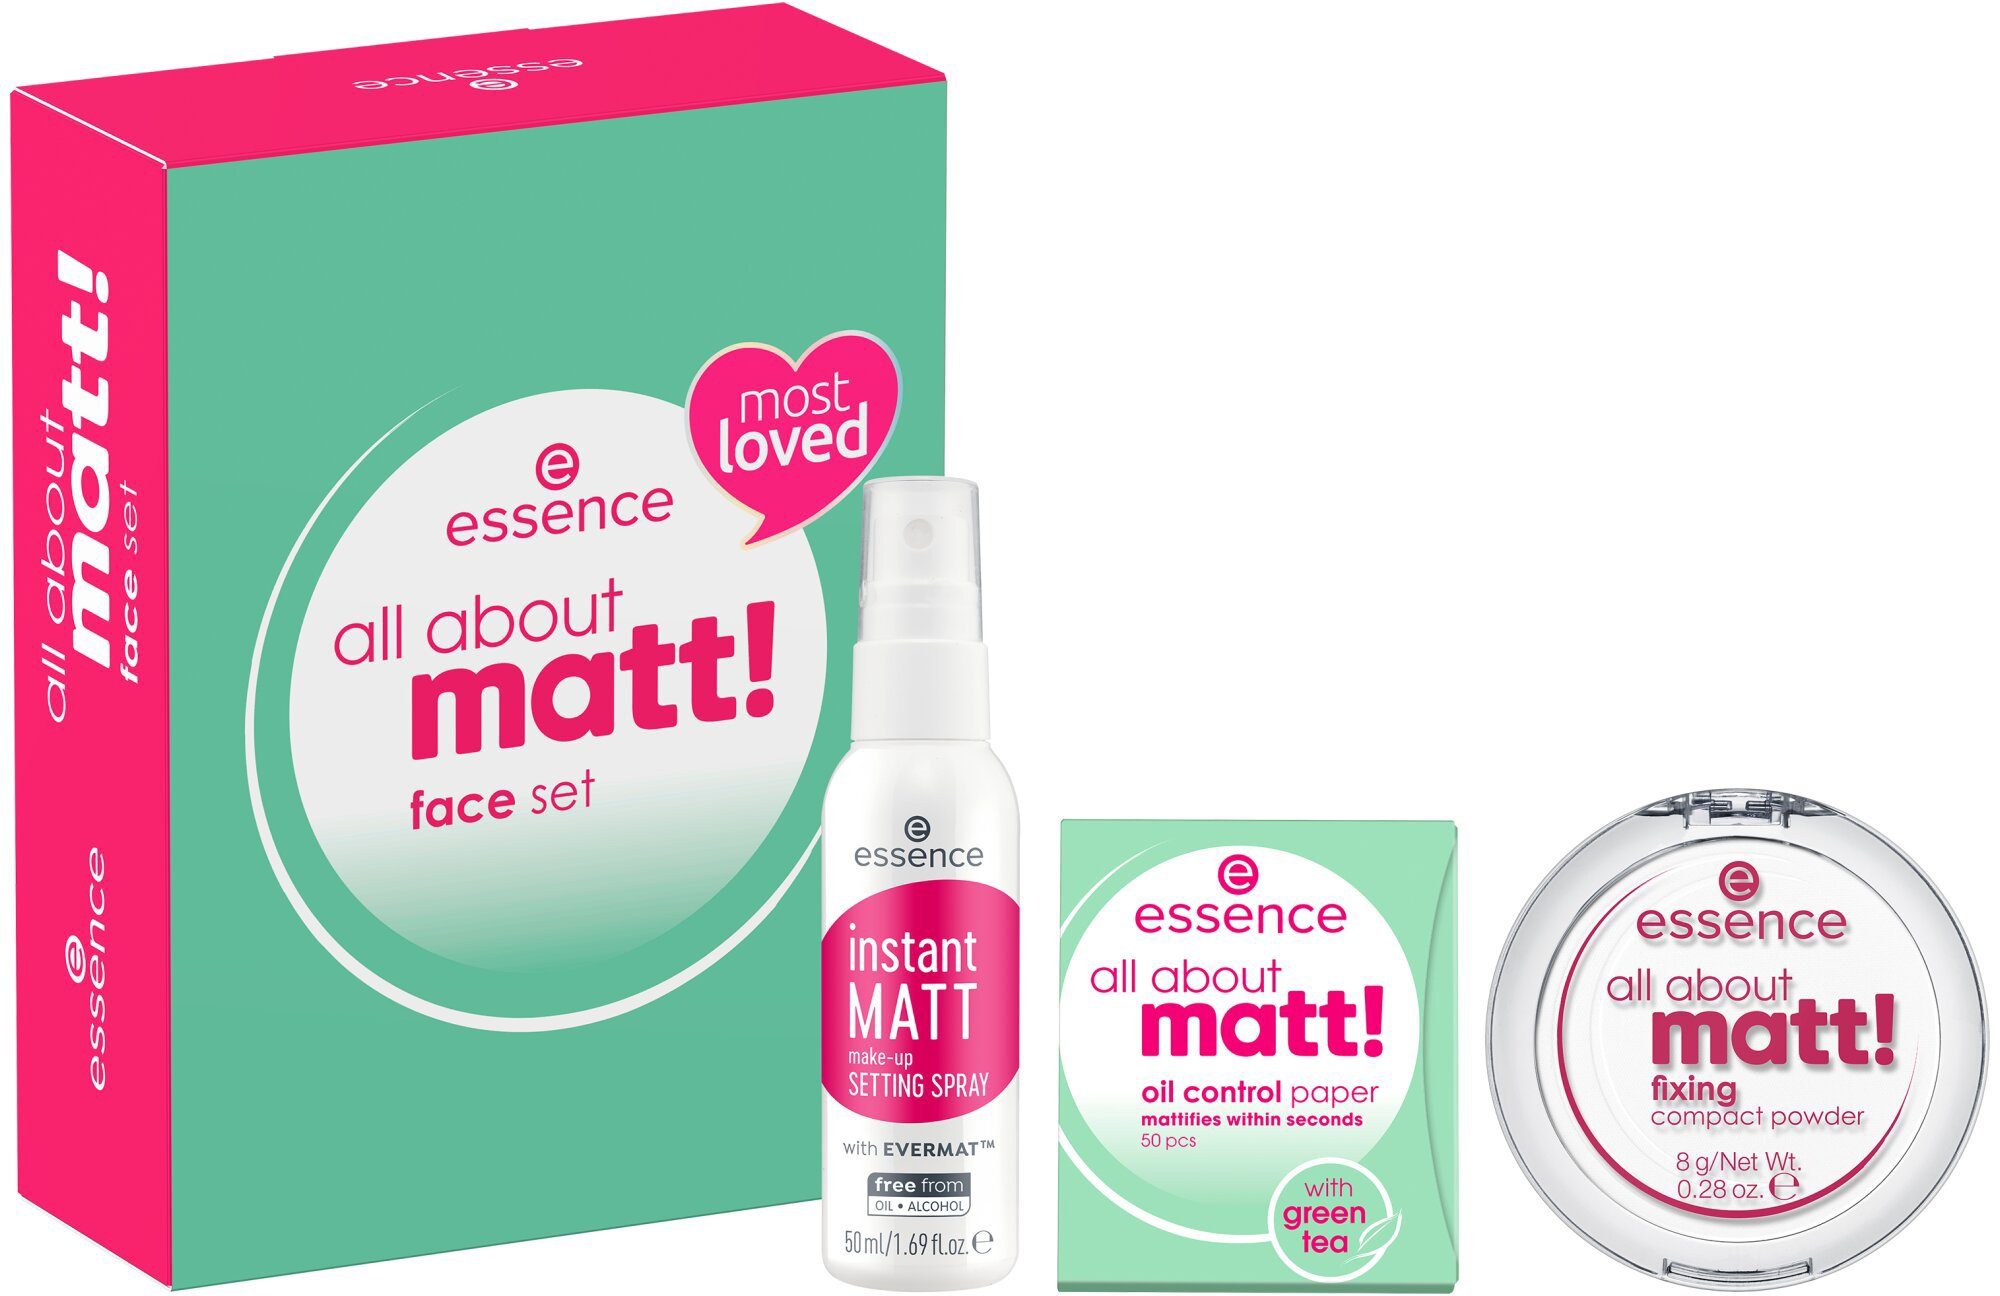 Essence Make-up Set face 3-tlg. about all matt! set